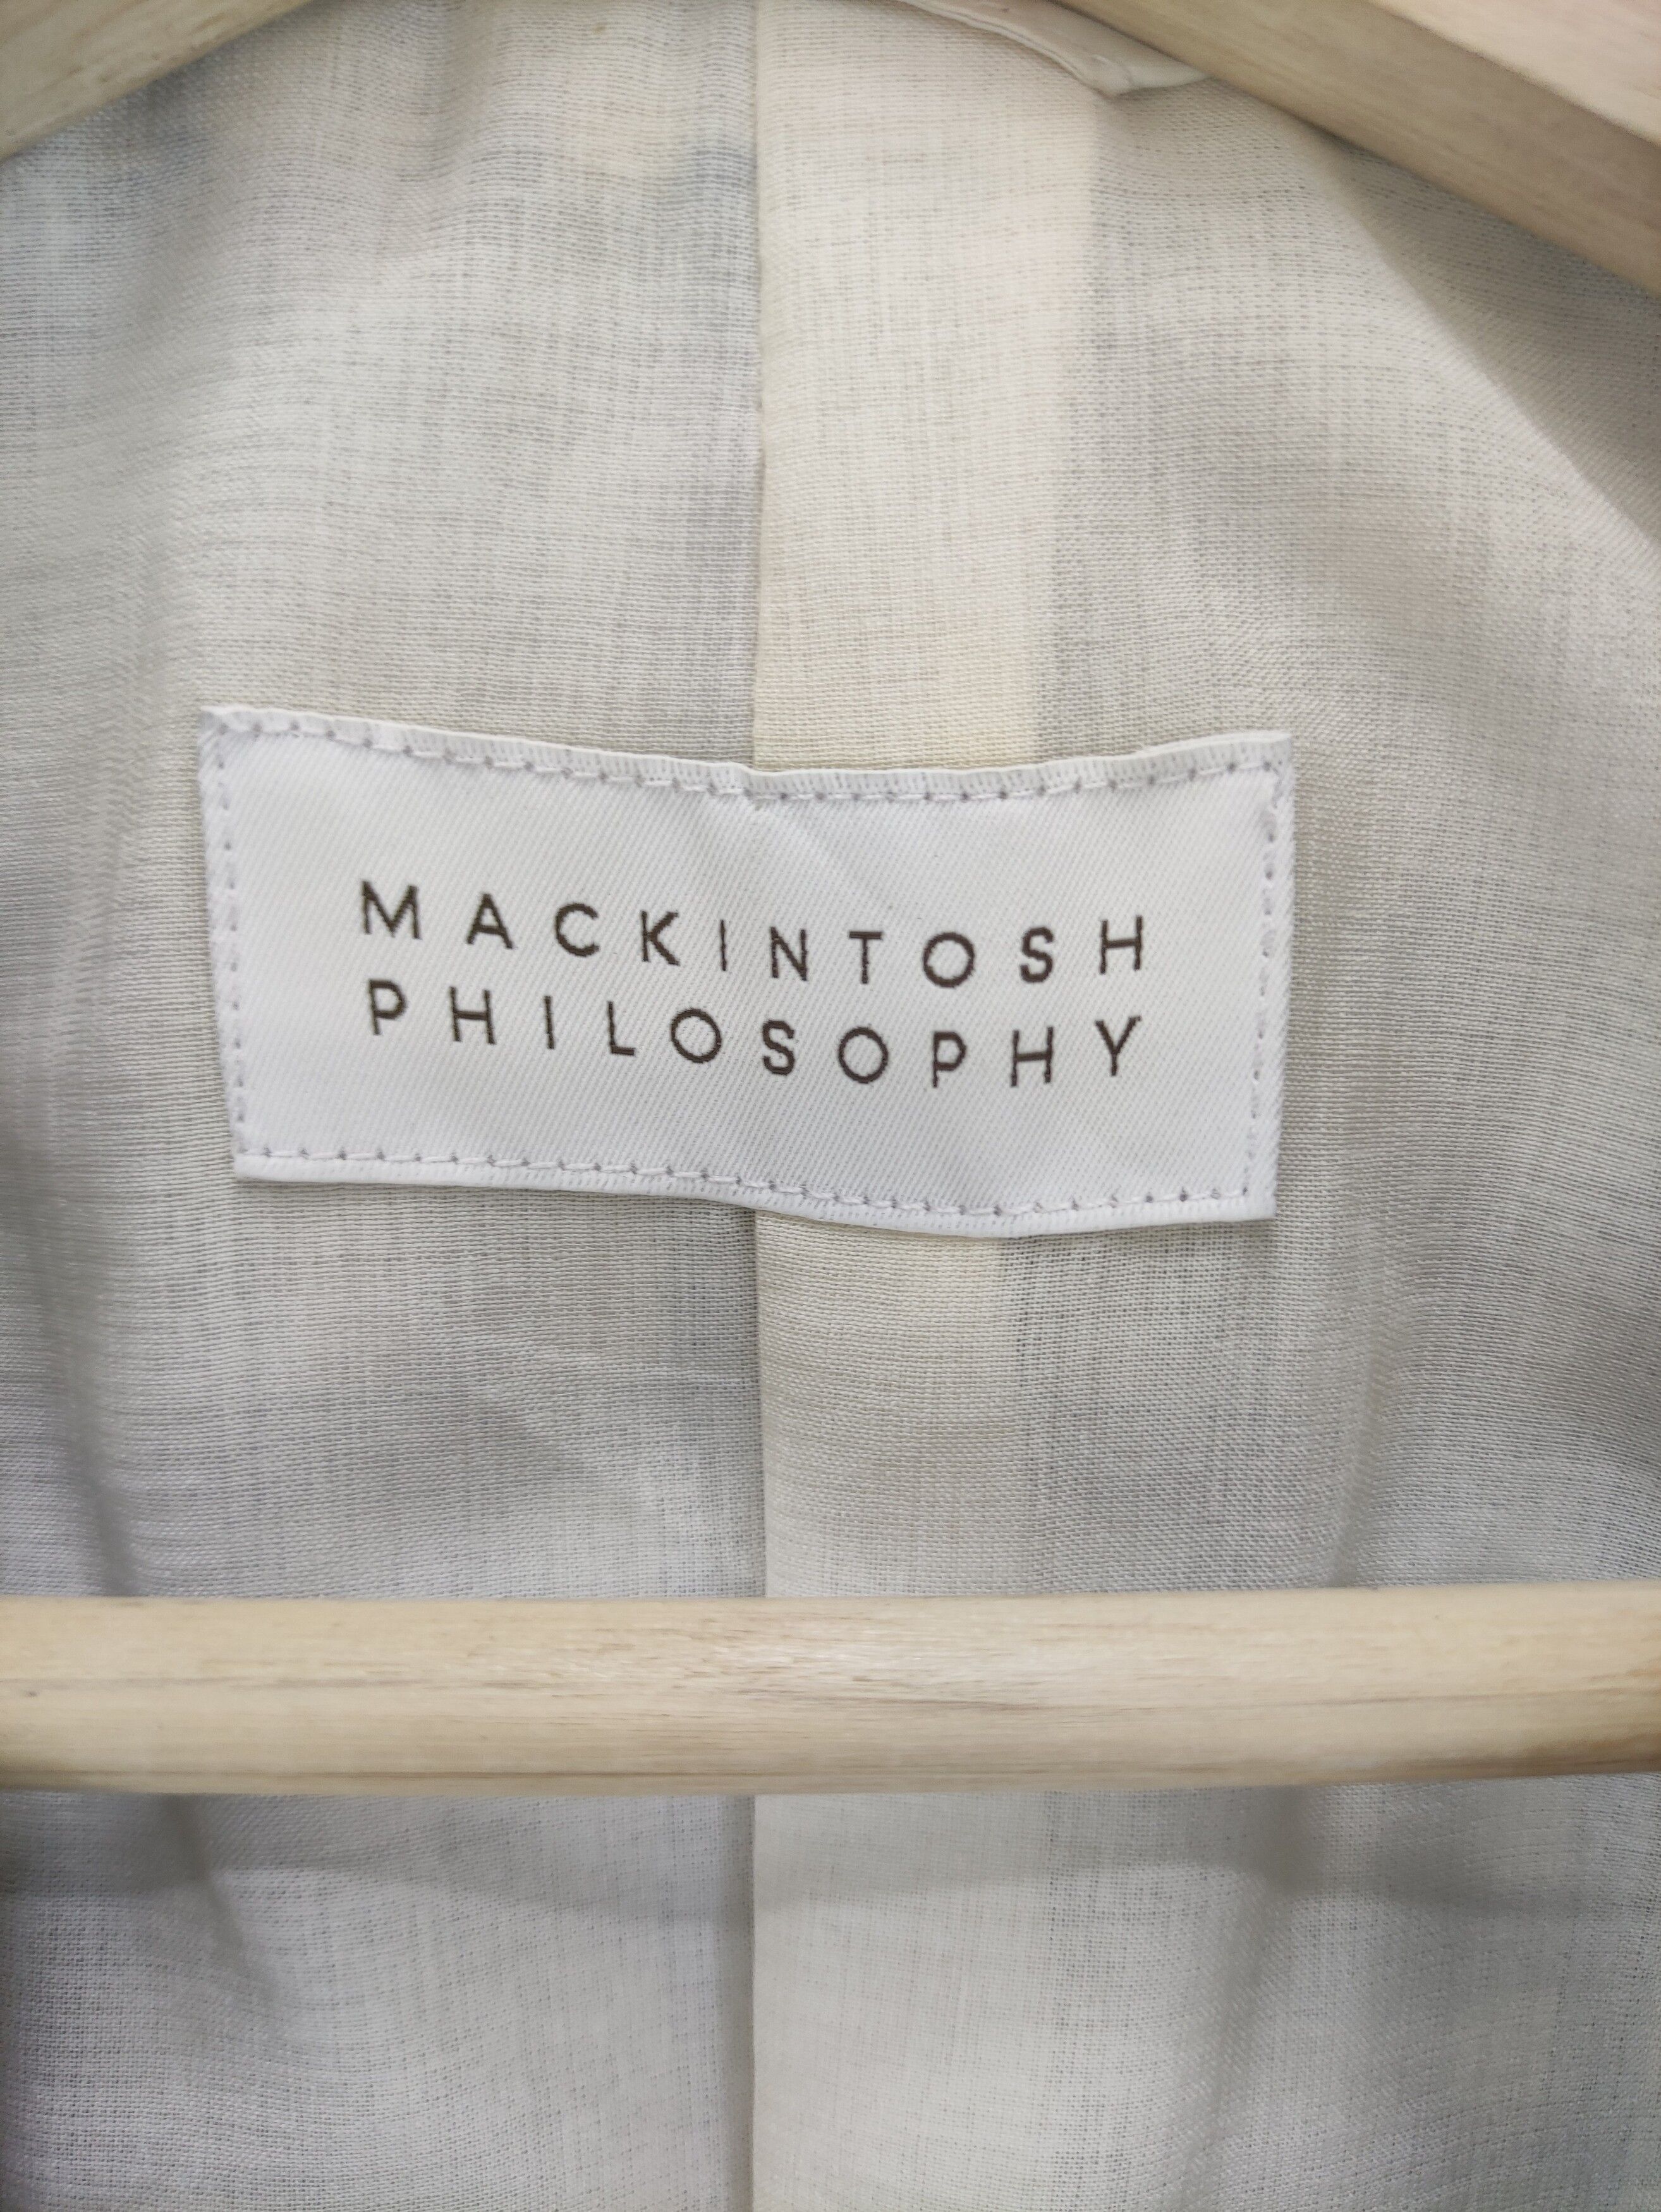 Mackintosh Vintage Mackintosh Philosophy Coat Jacket Checkered Size US S / EU 44-46 / 1 - 3 Thumbnail